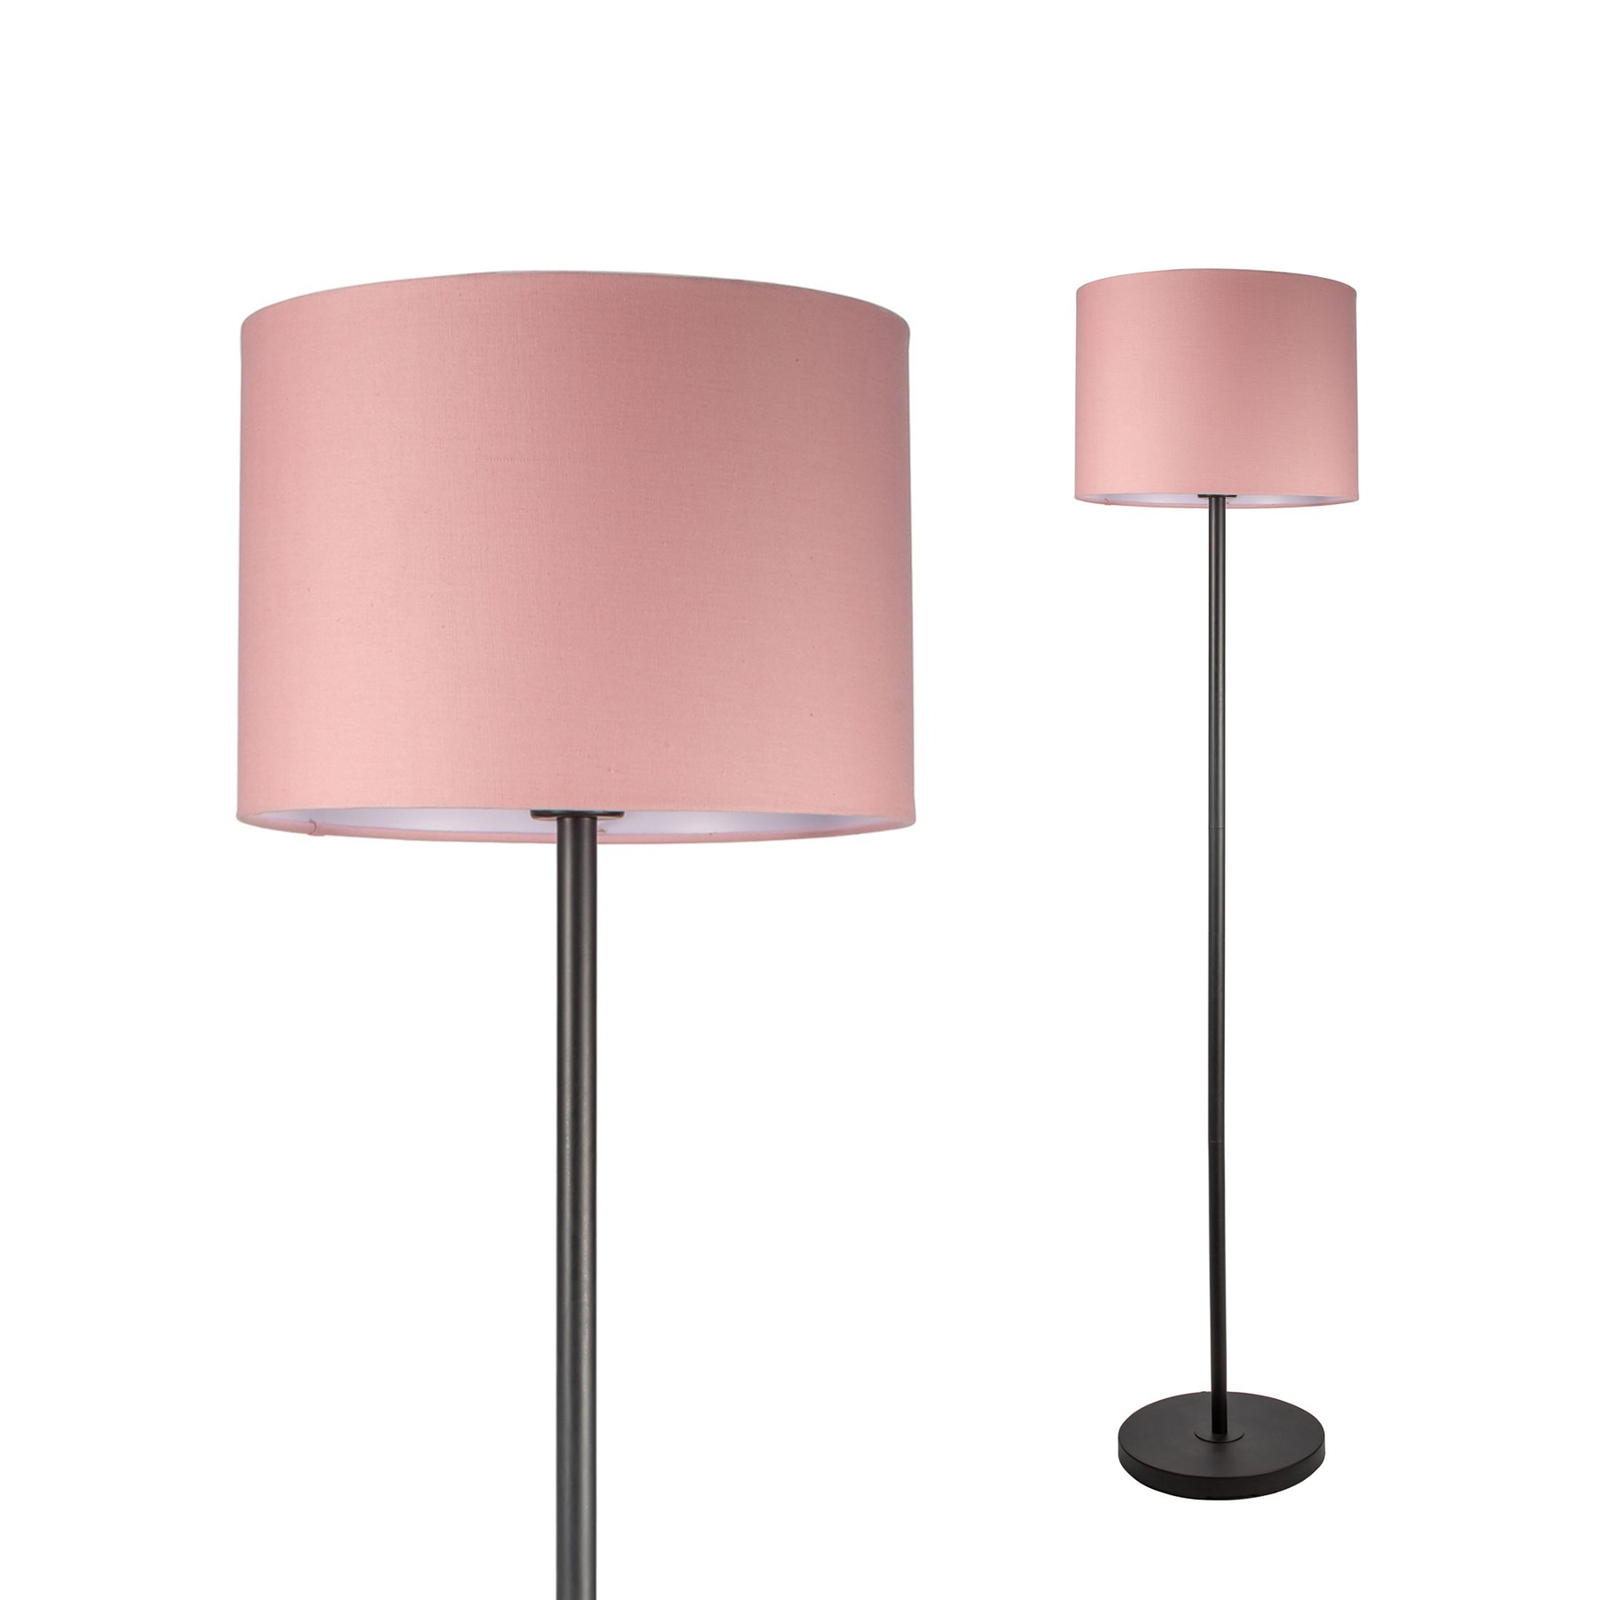 Pauleen Grand Reverie podna lampa u ružičasto/crnoj boji